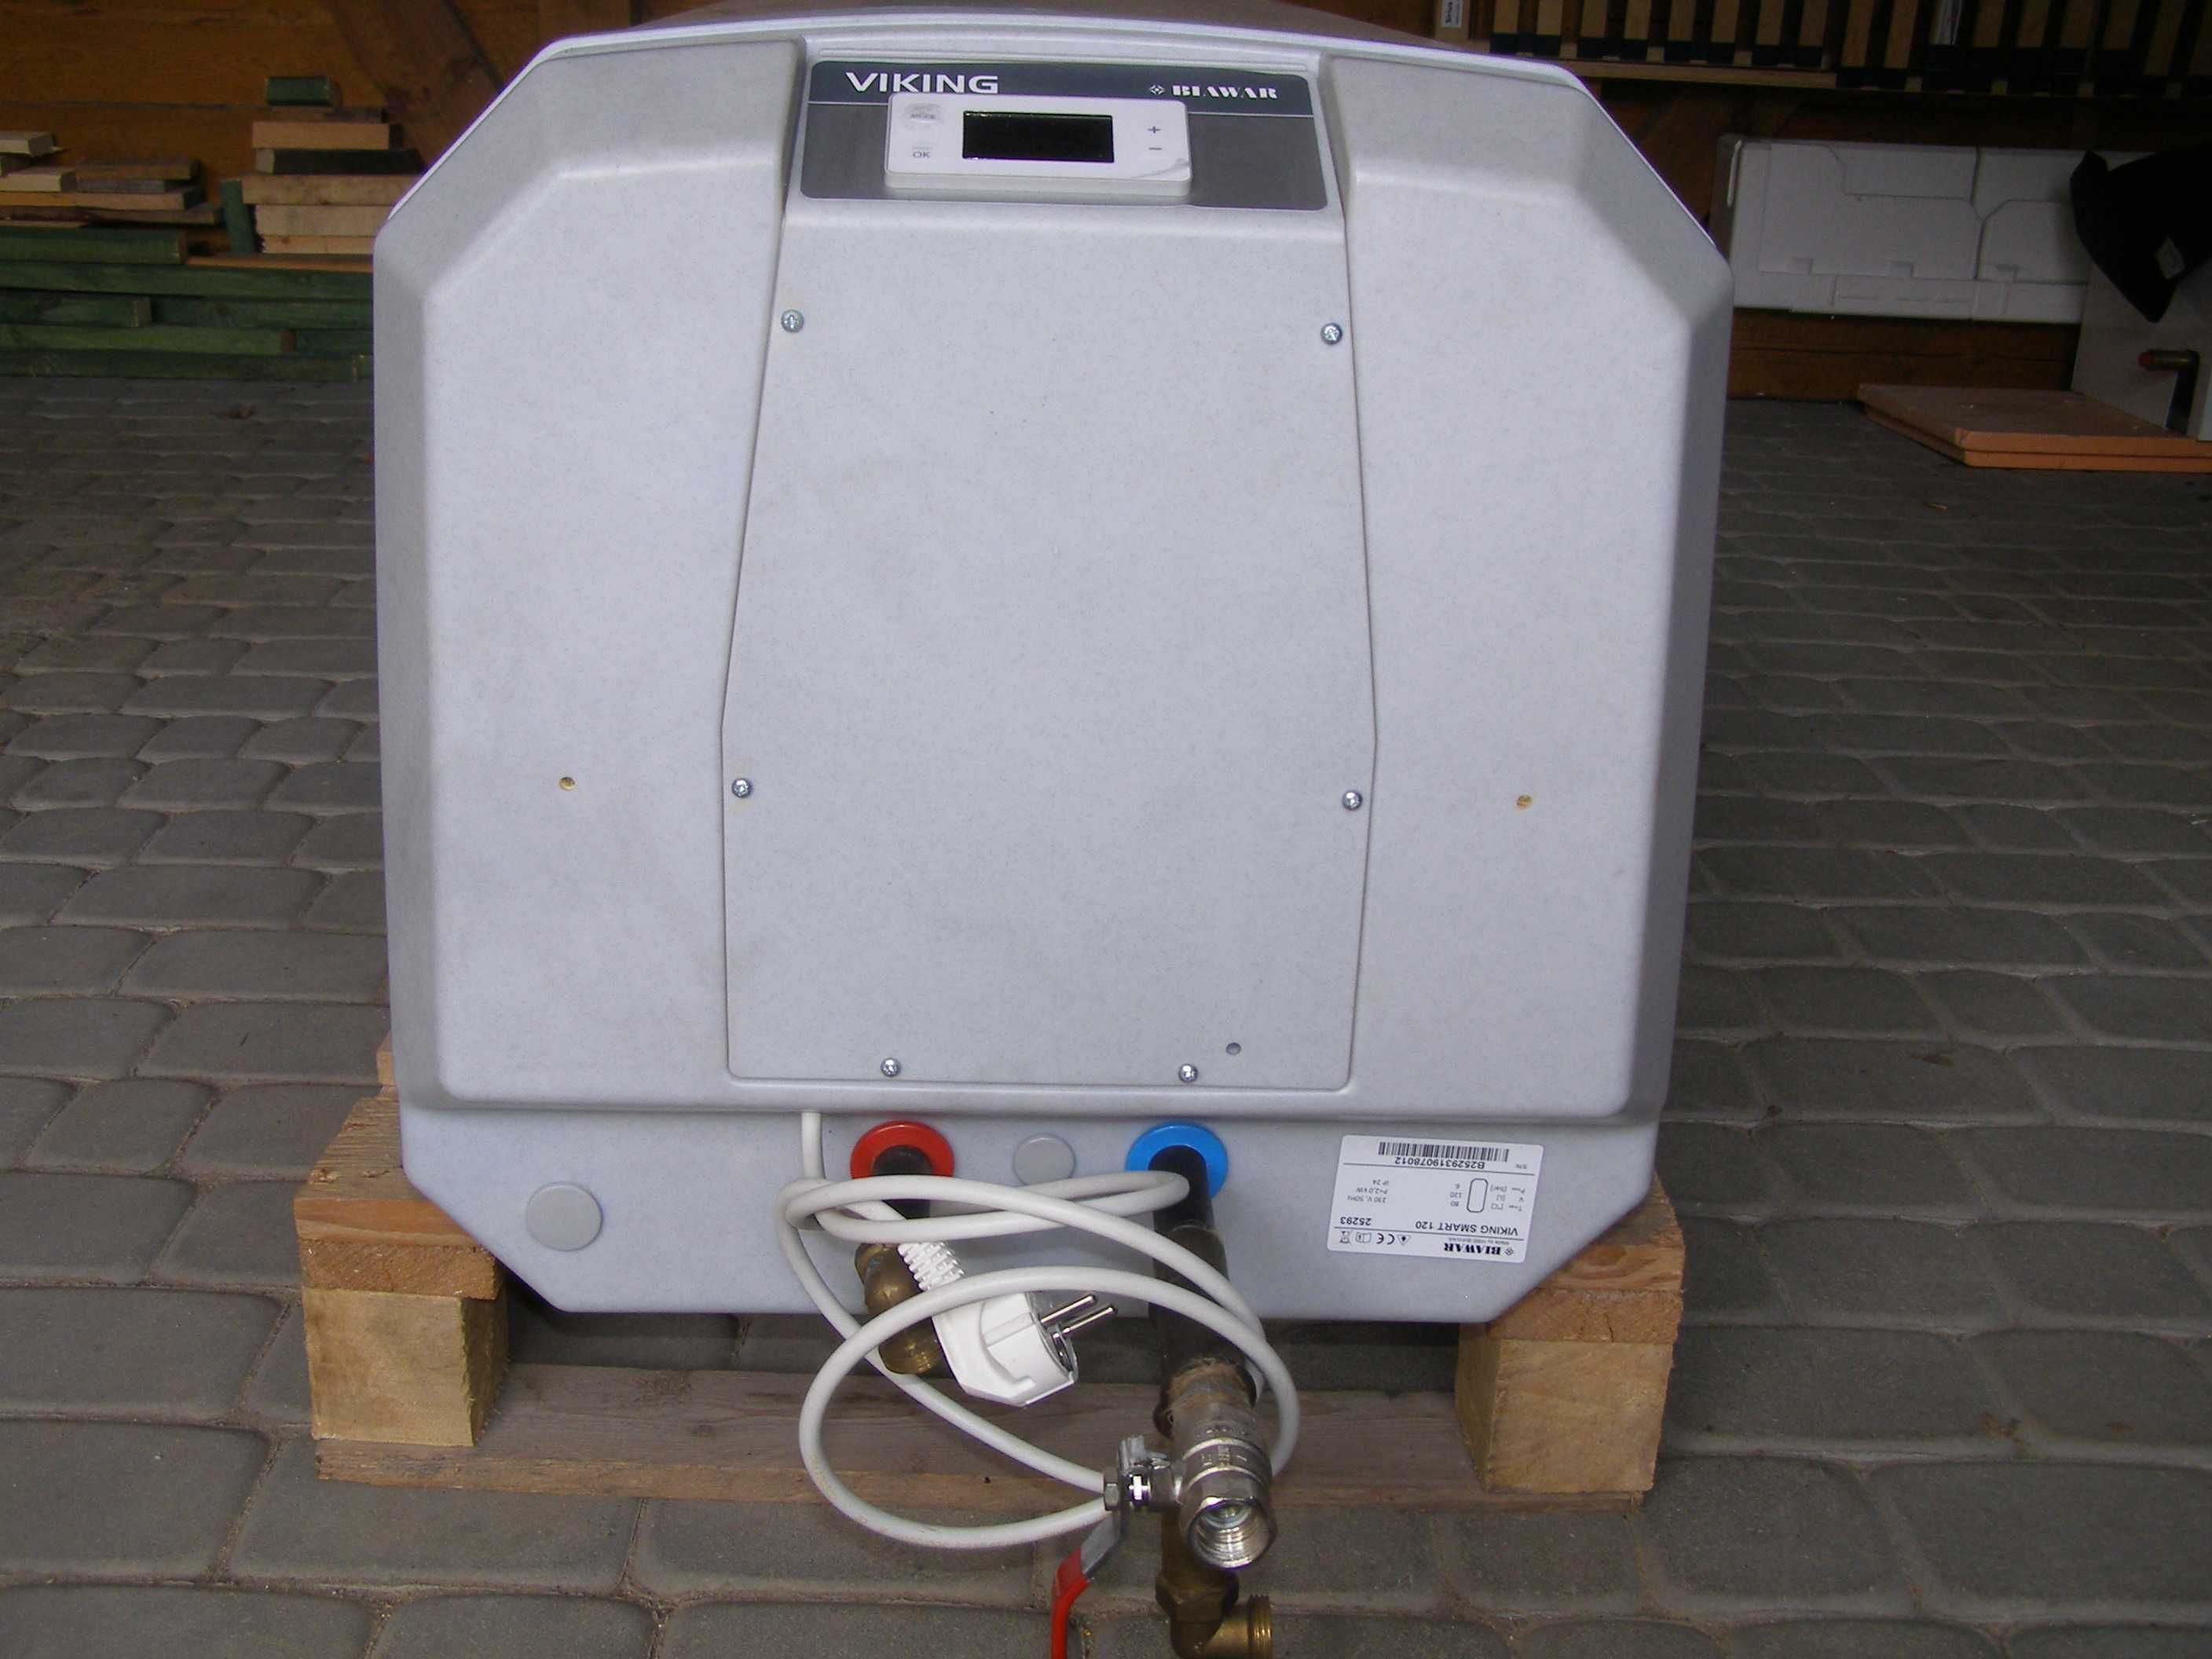 Elektryczny podgrzewacz wody biawar, viking smart, 120 l - używany